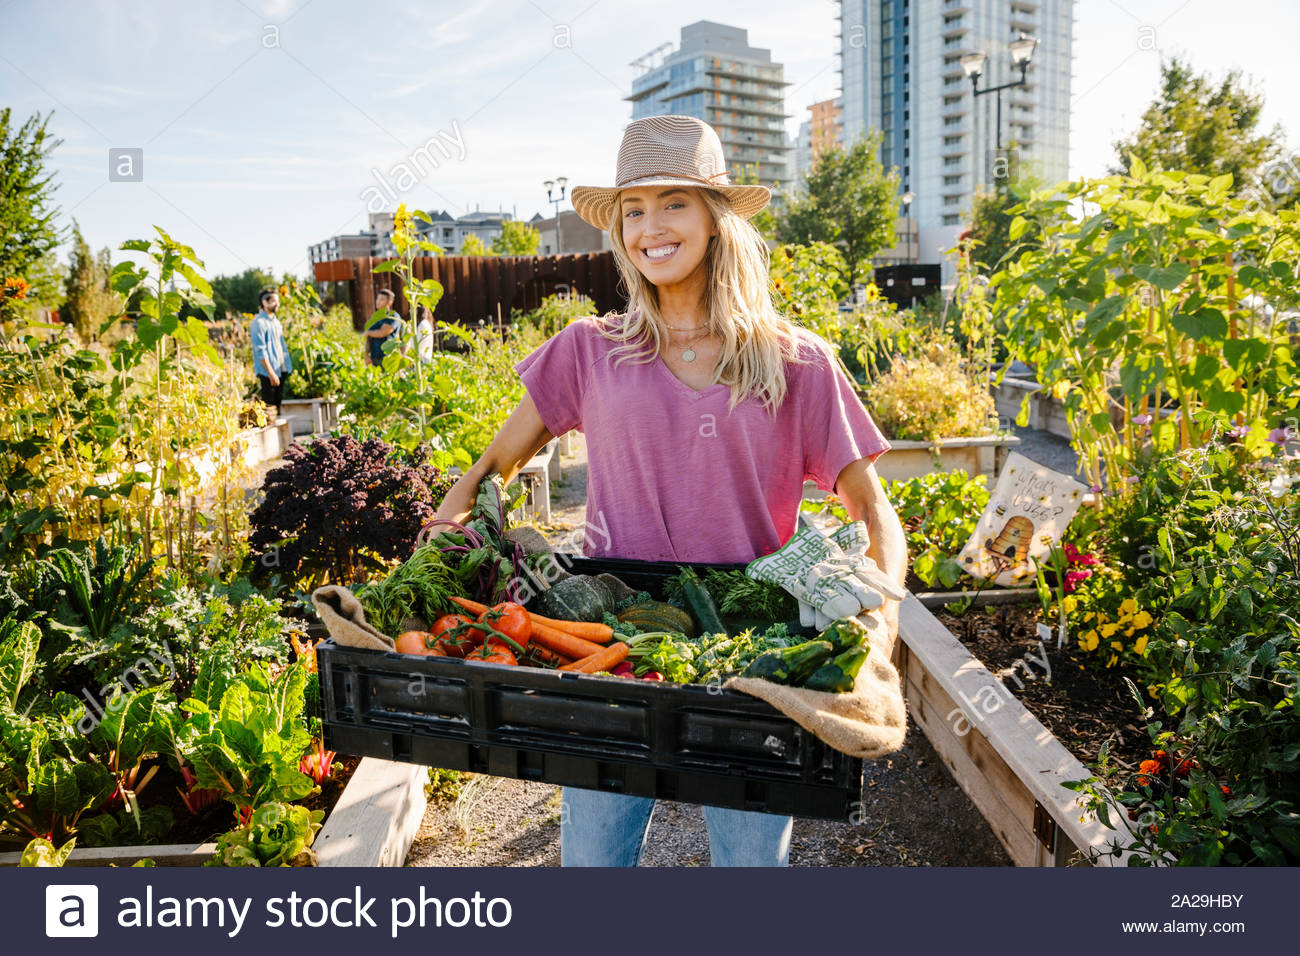 Portrait heureux et confiant femme transportant des légumes récoltés dans le jardin ensoleillé, communauté urbaine Banque D'Images